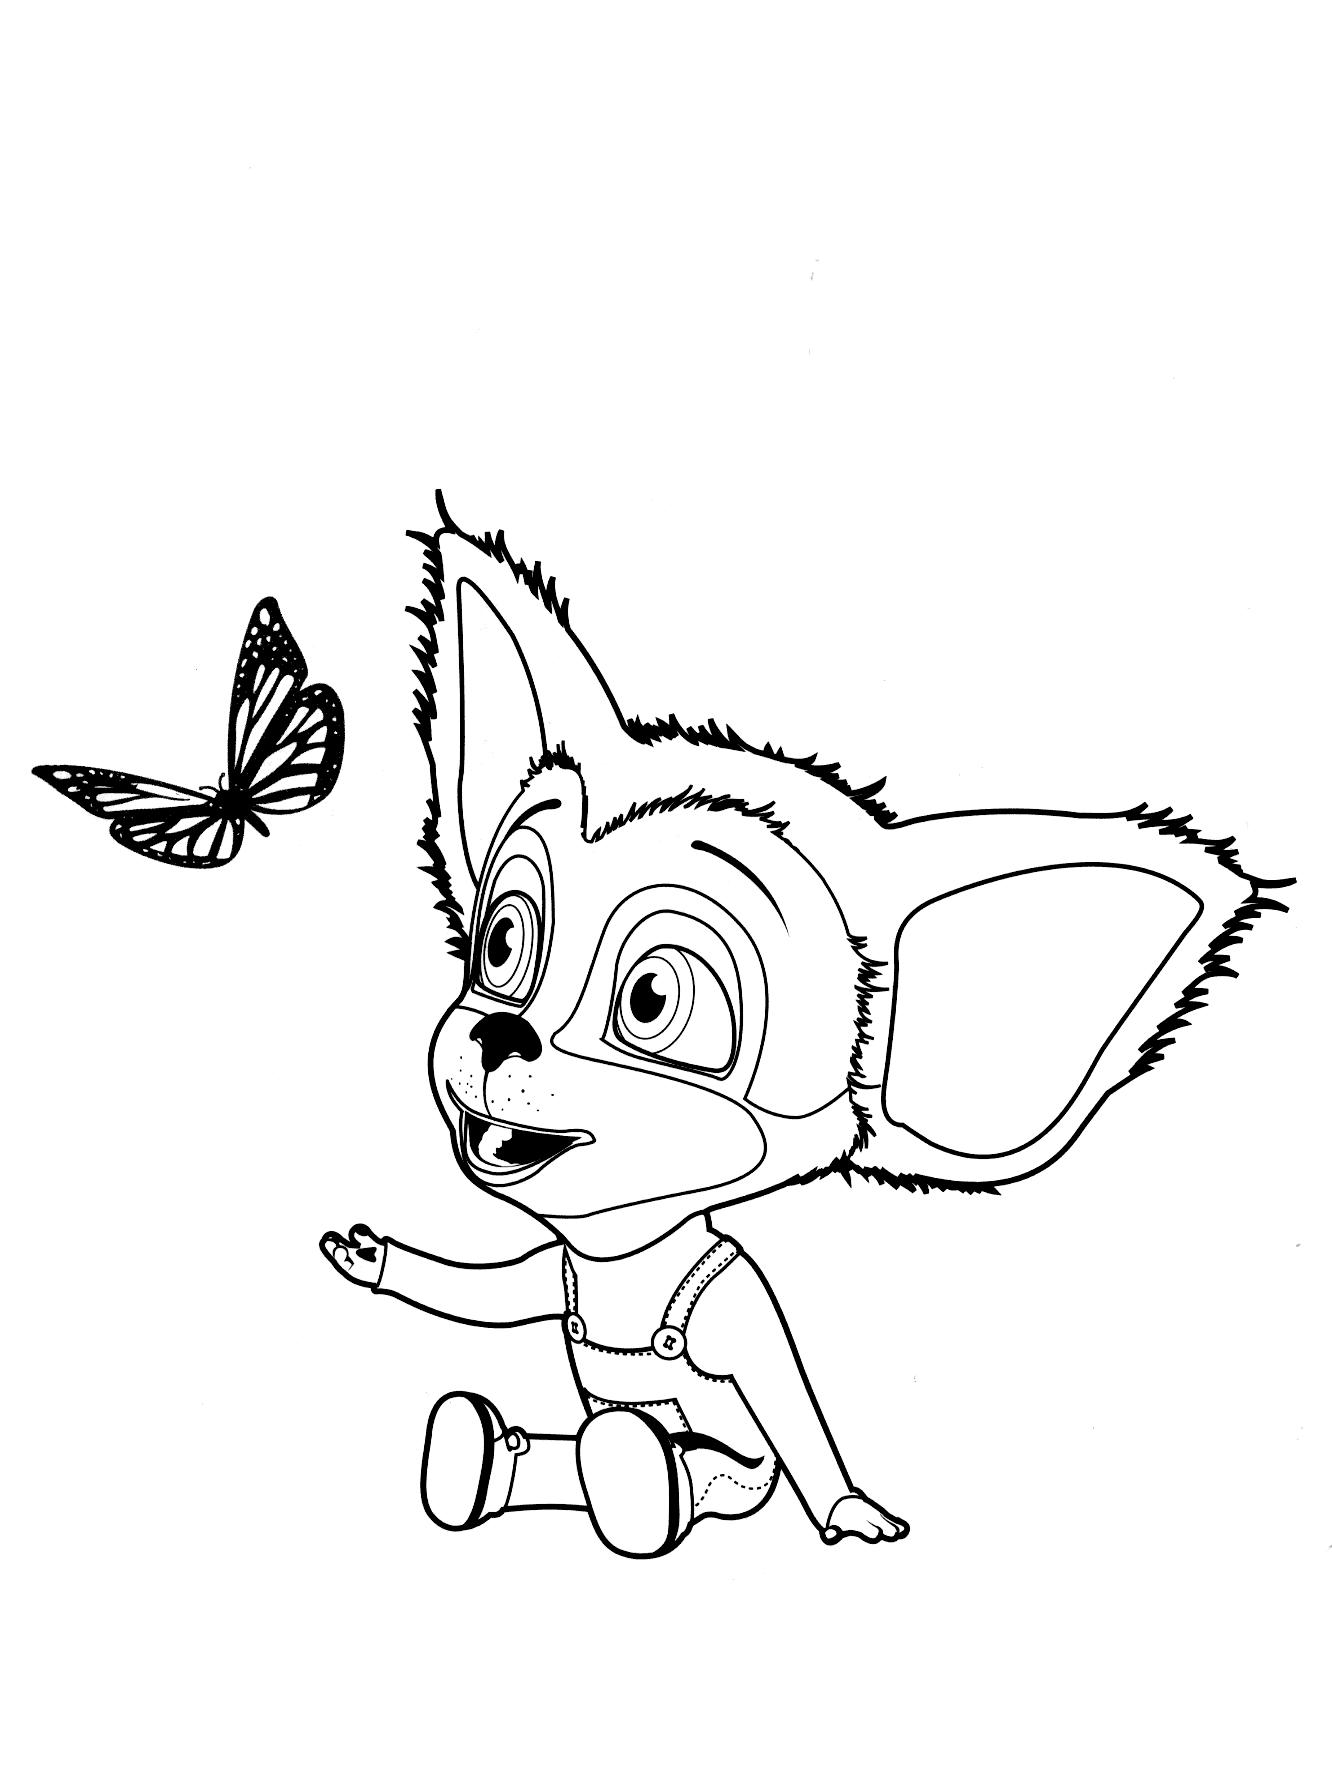 Раскраска с малышем и бабочкой (малыш, бабочка, барбоскины)